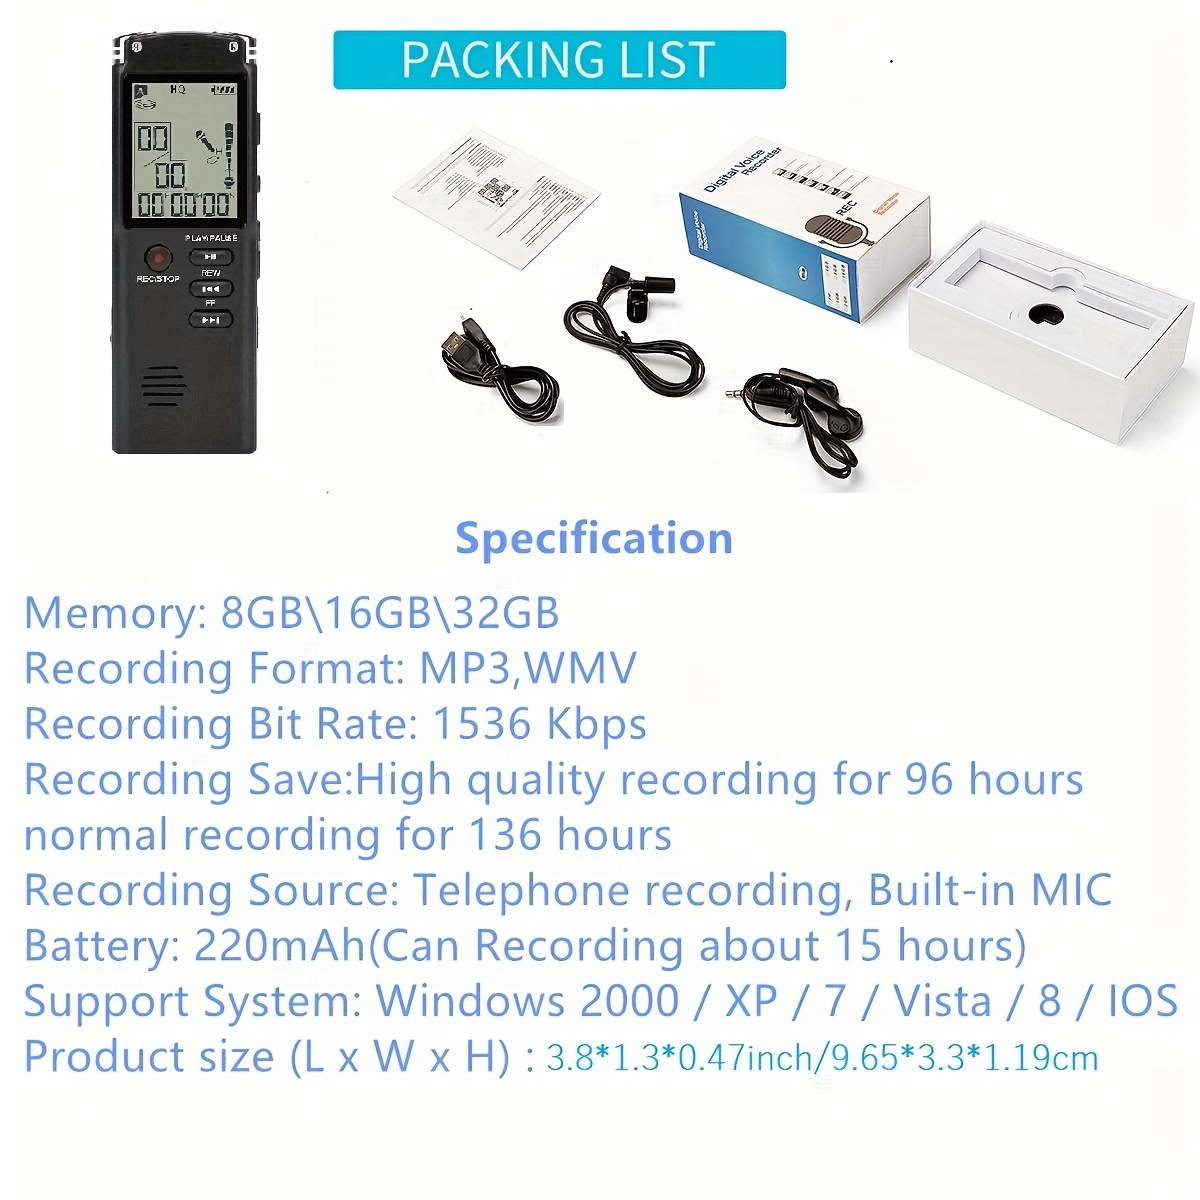 New majestic voice recorder vr-38 registratore vocale digitale memoria 16gb  – Emarketworld – Shopping online